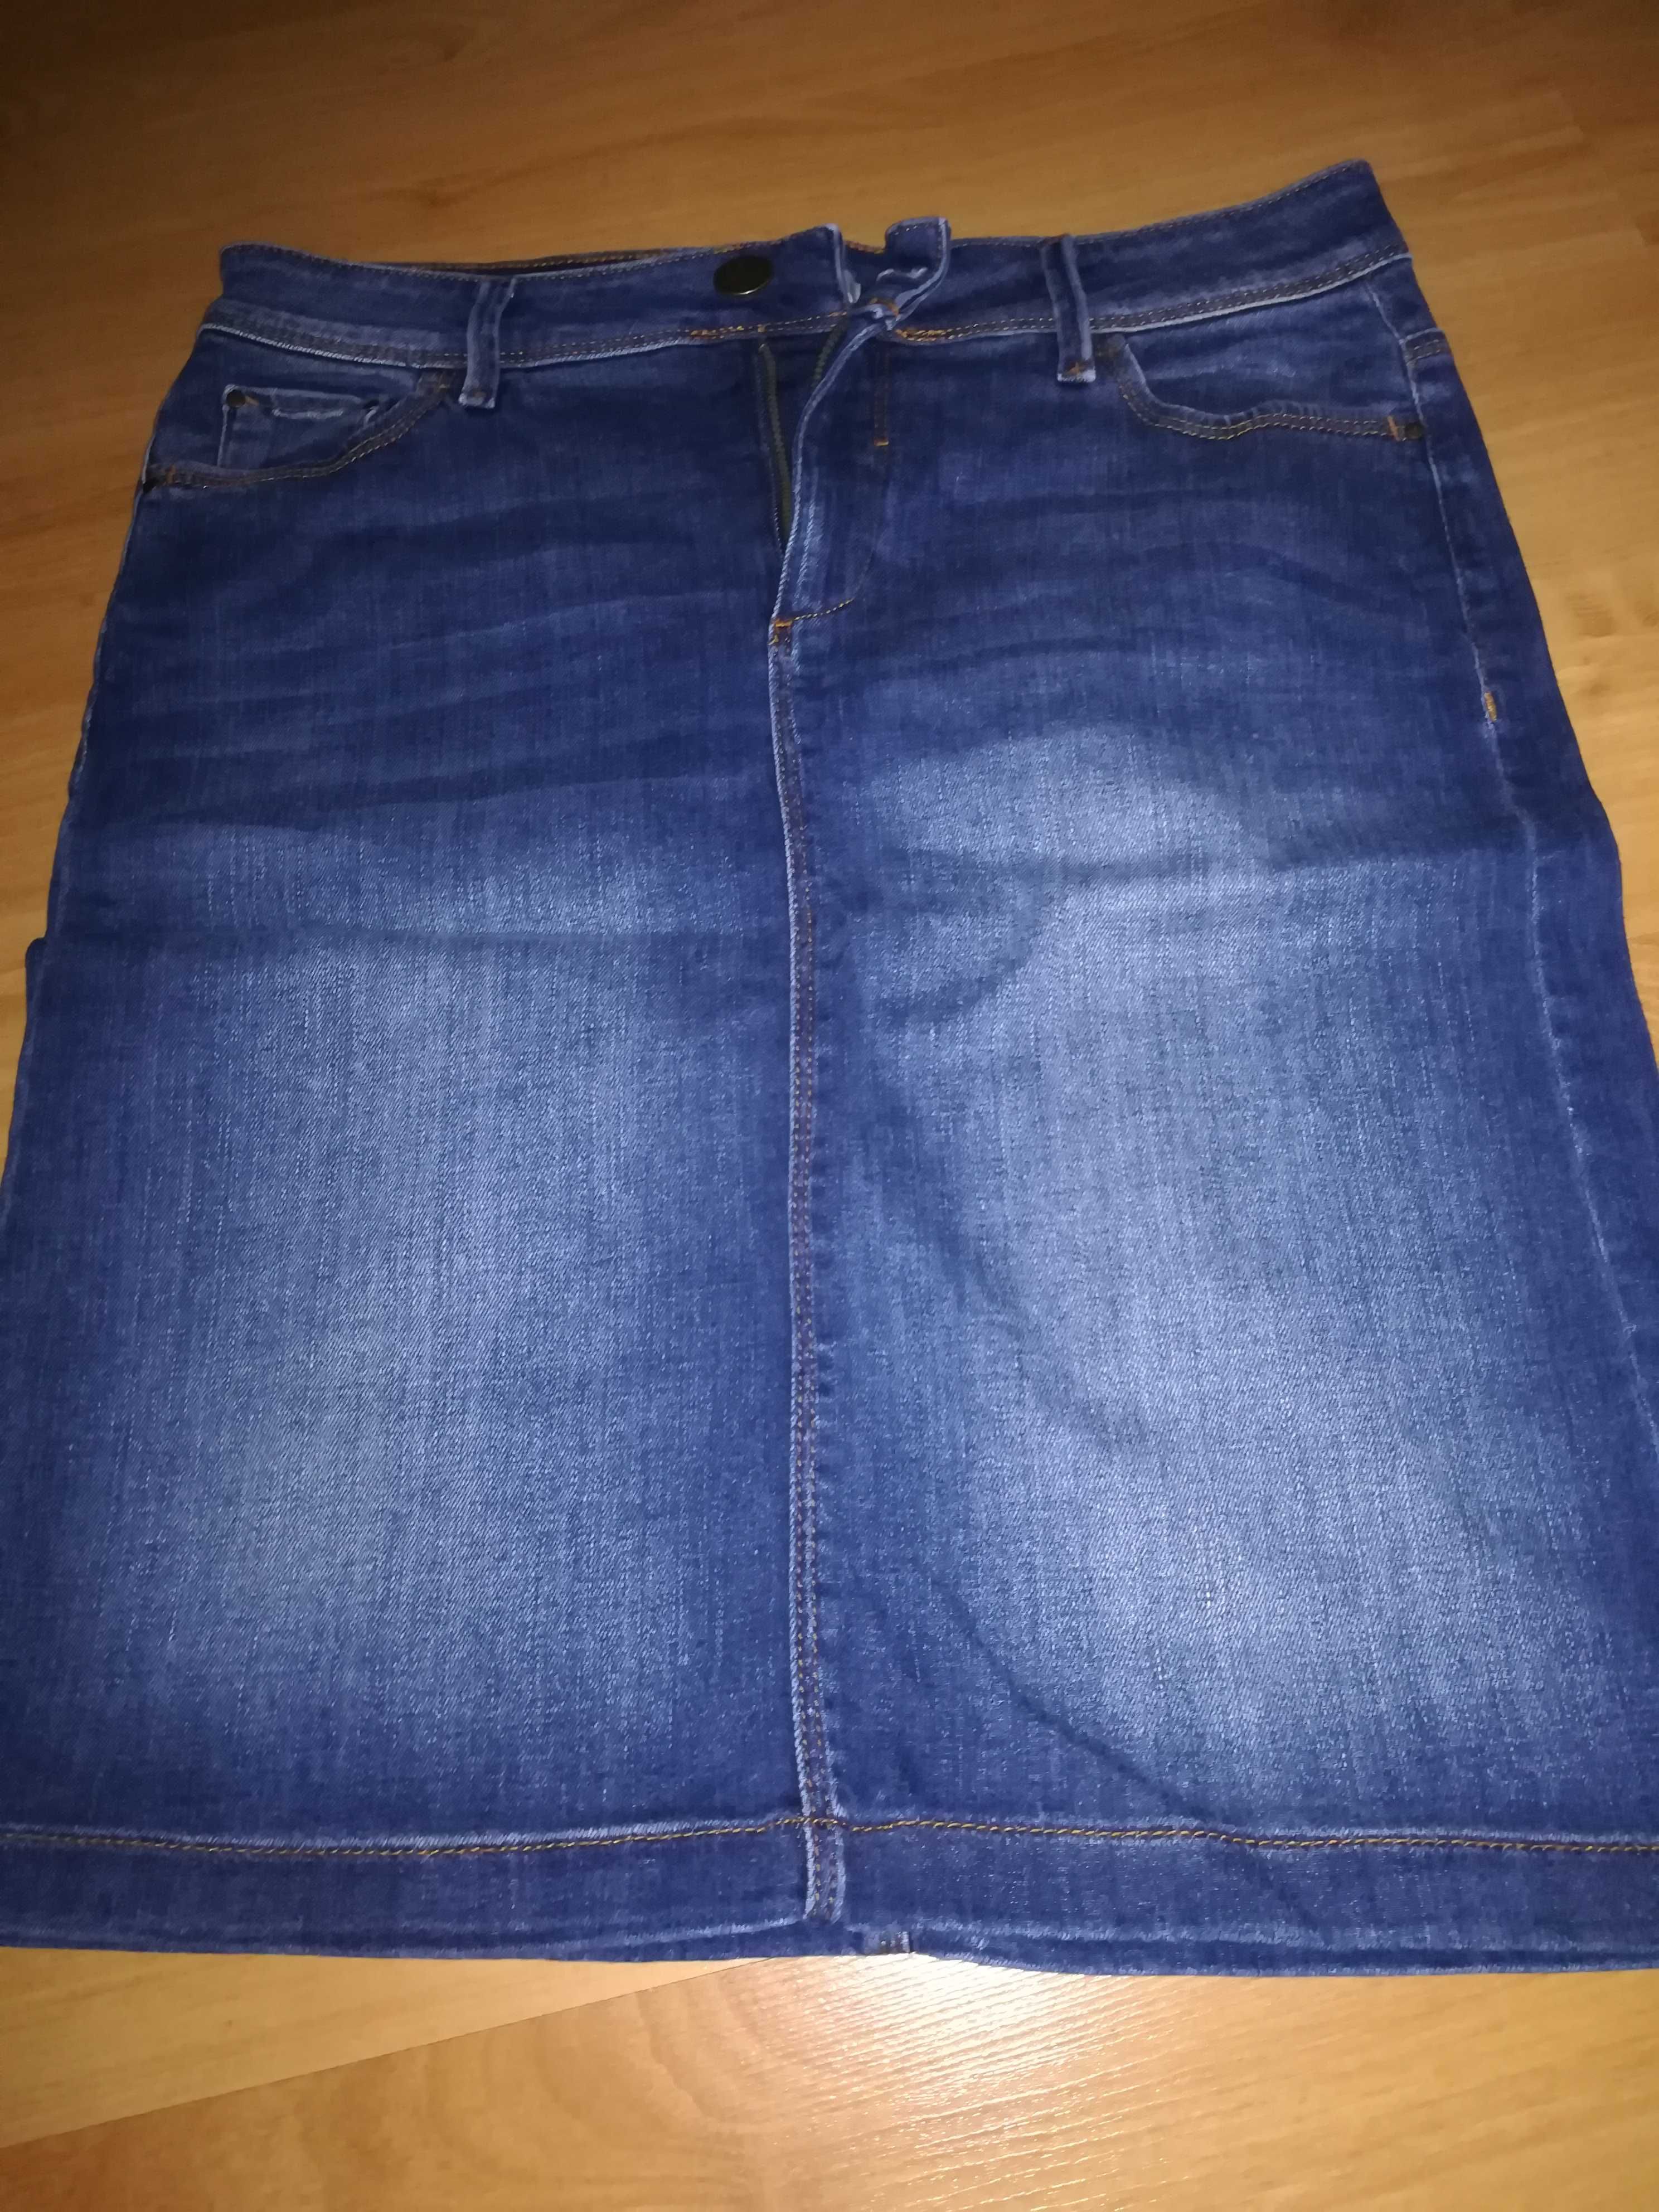 Spodnica damska jeans